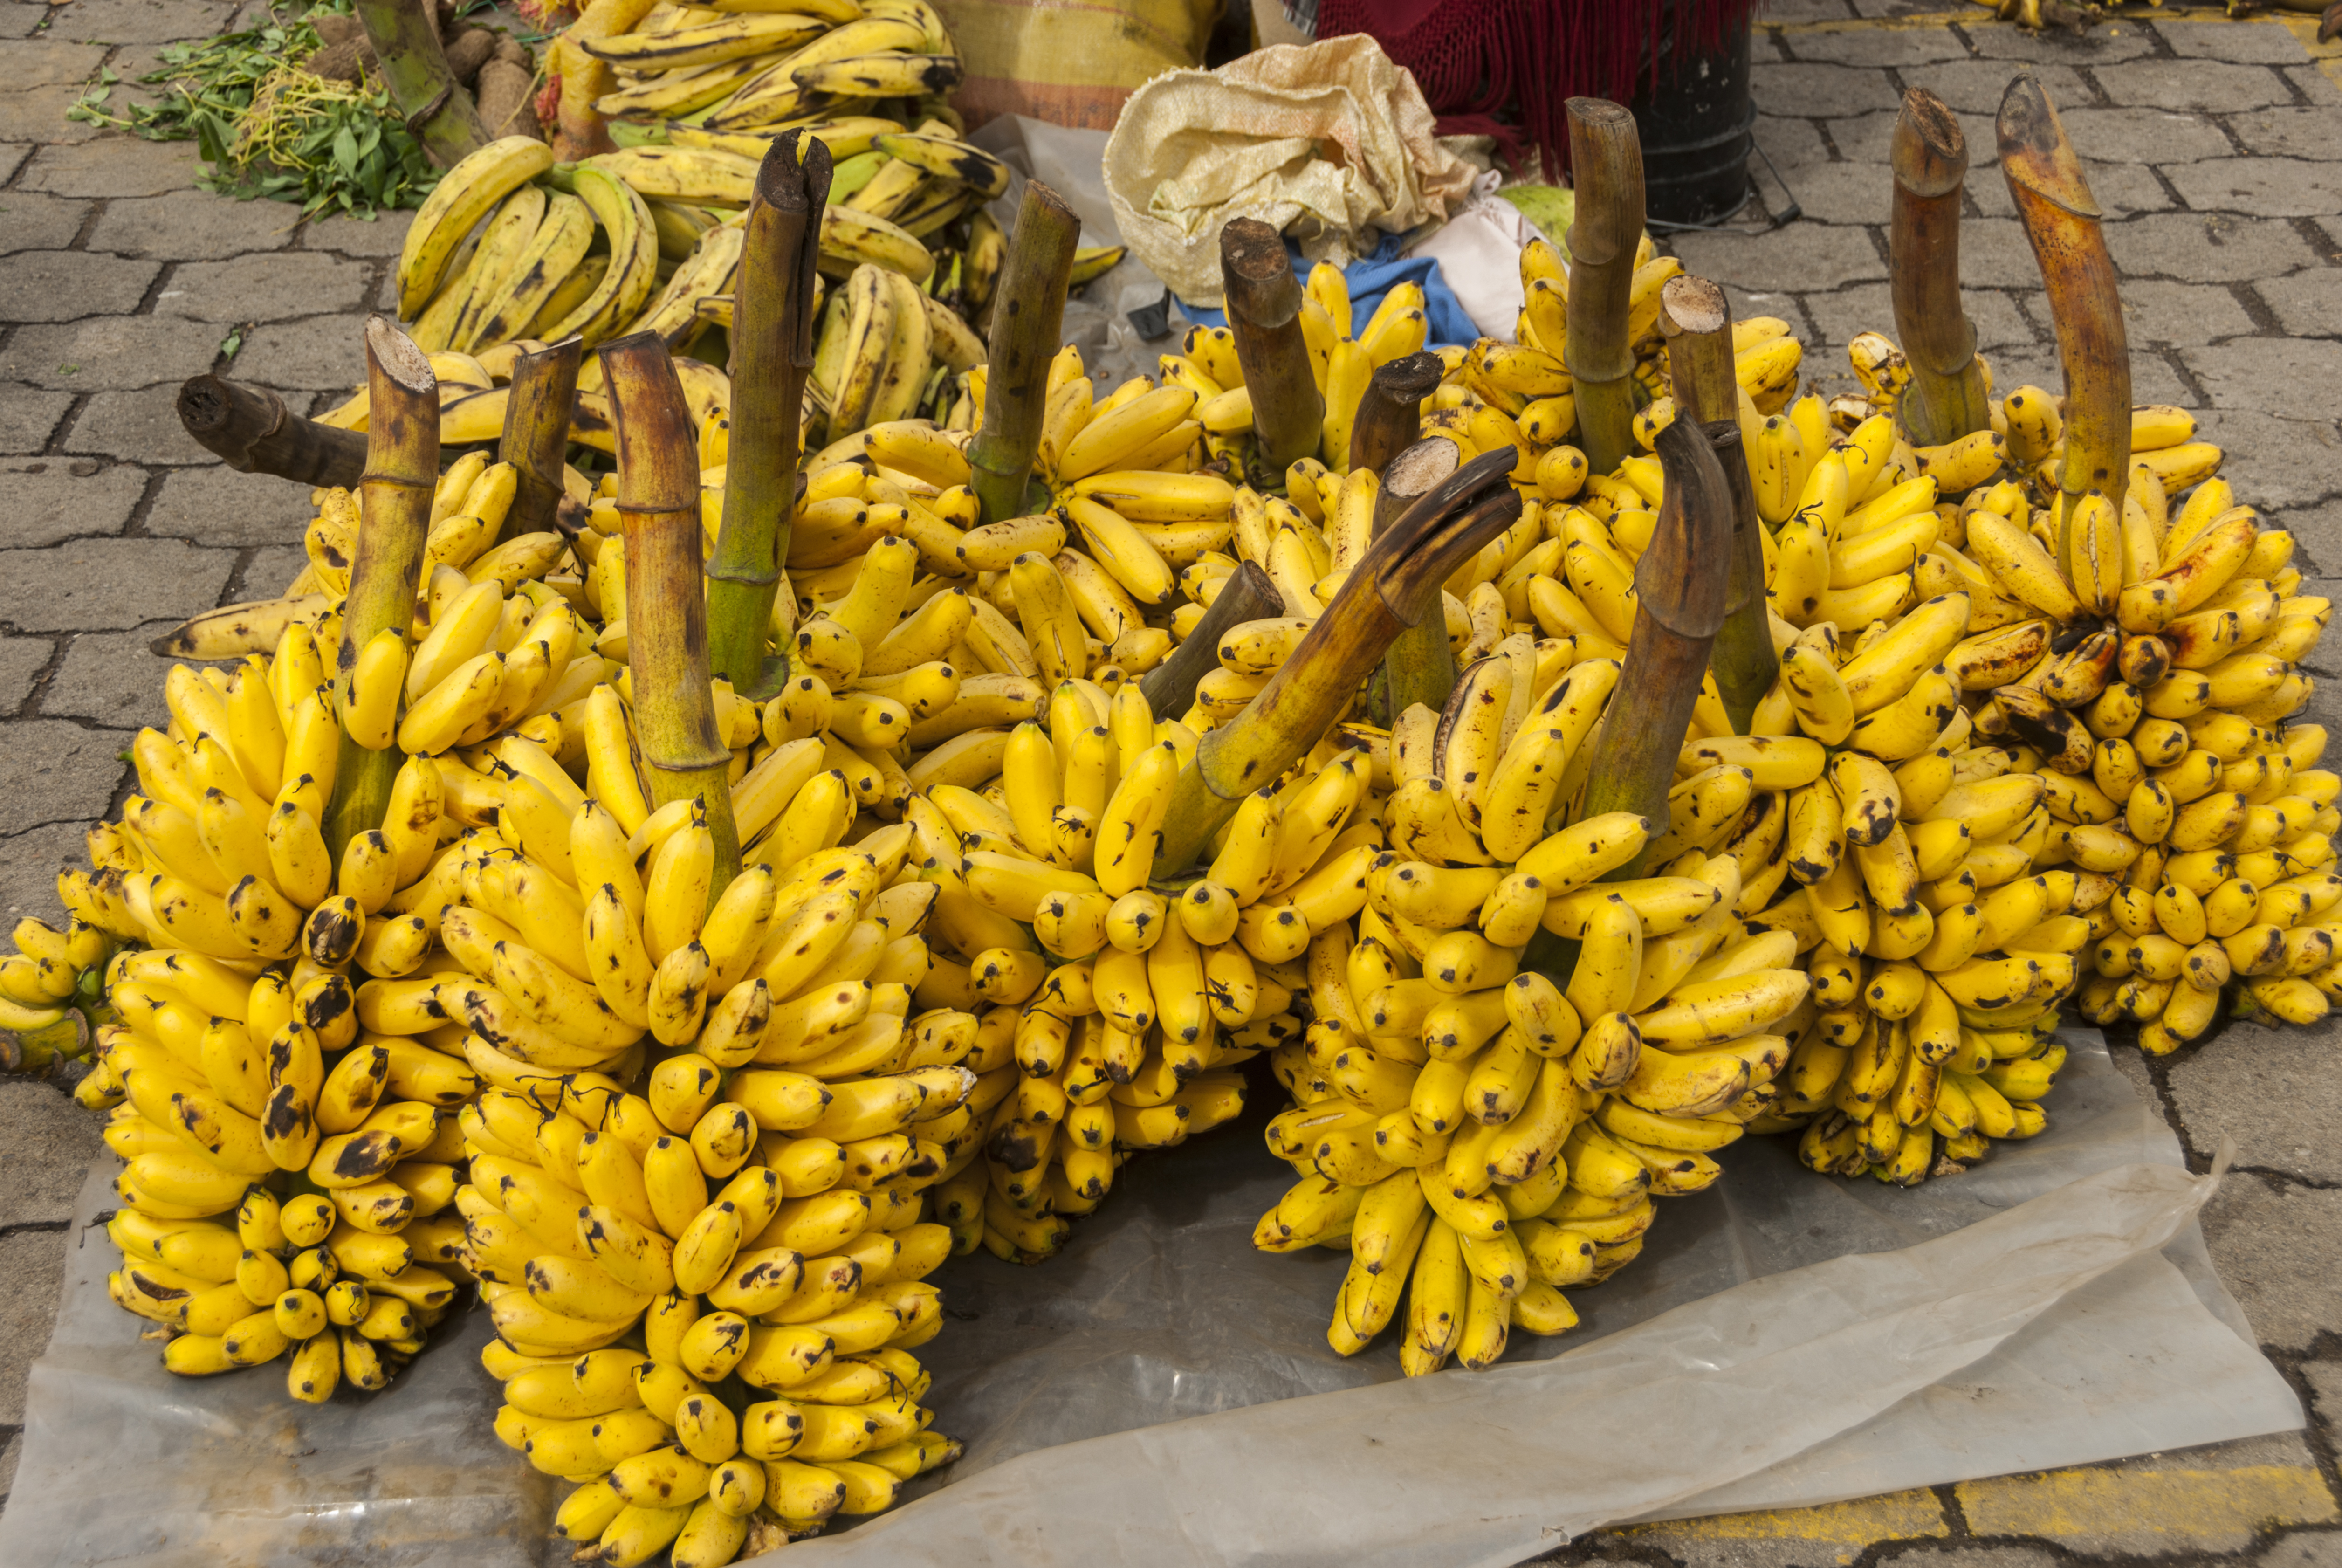 Ecuador's bananas in the market